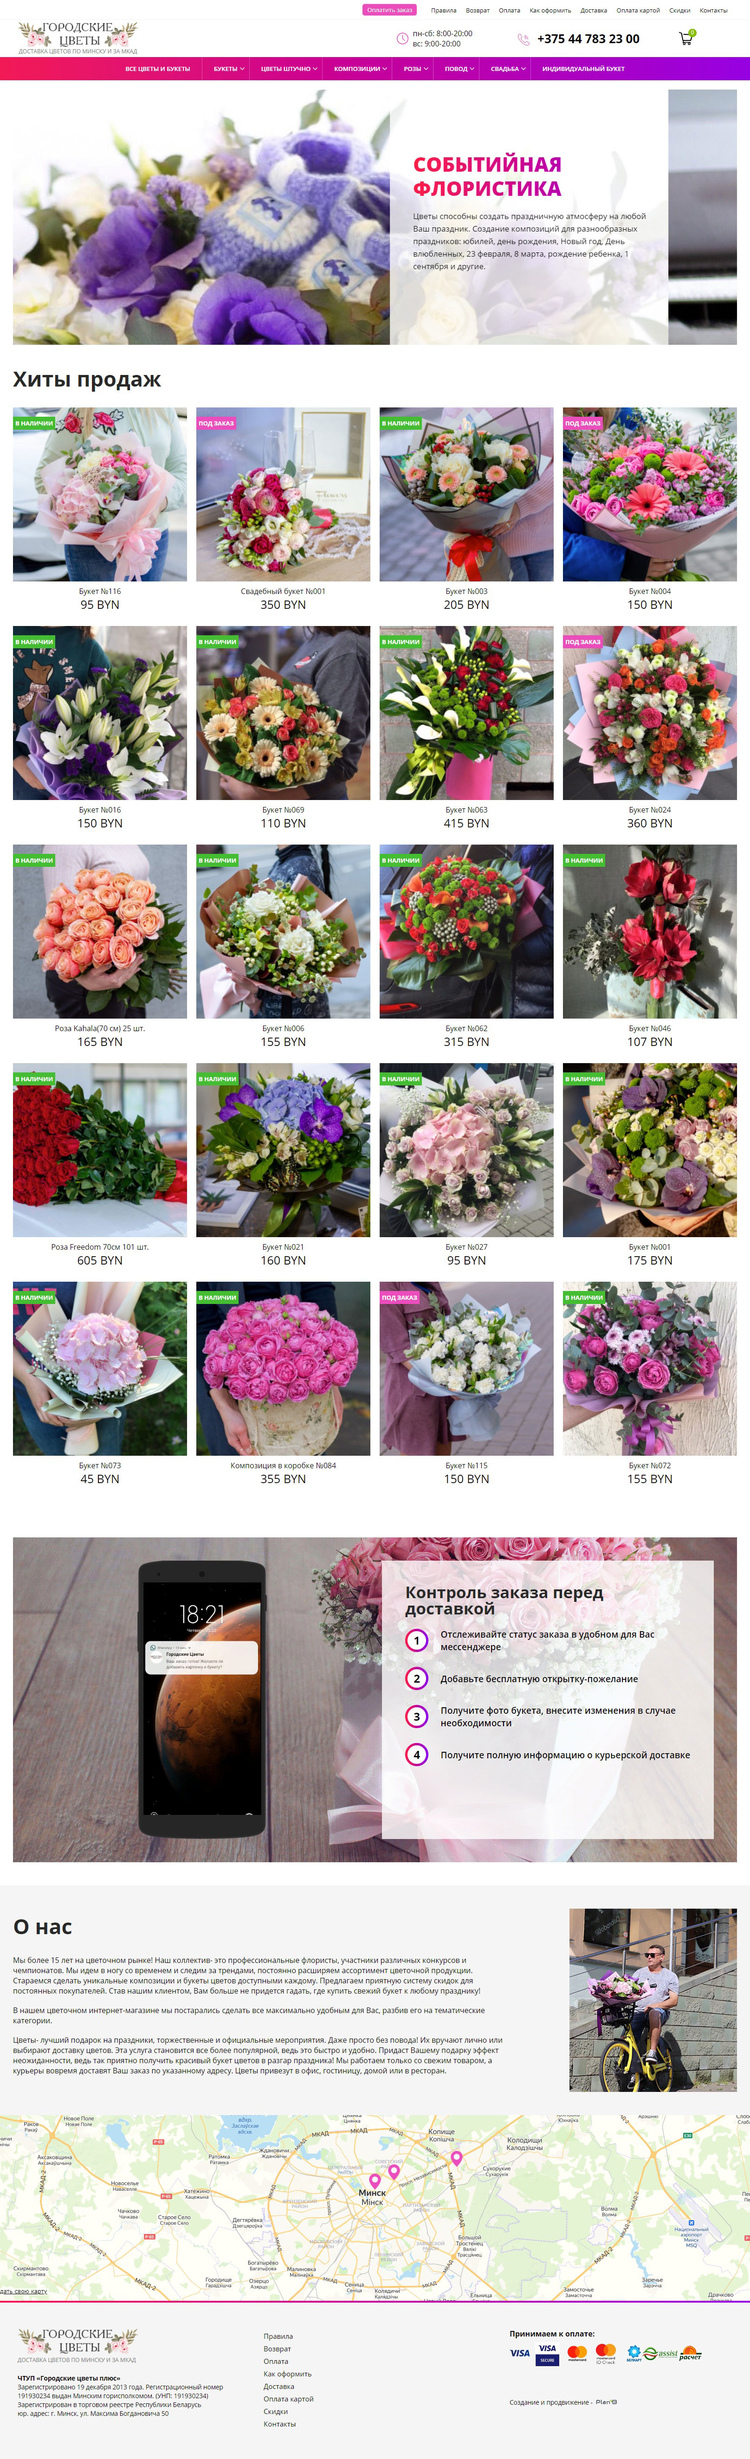 Интернет-магазин «Городские цветы»